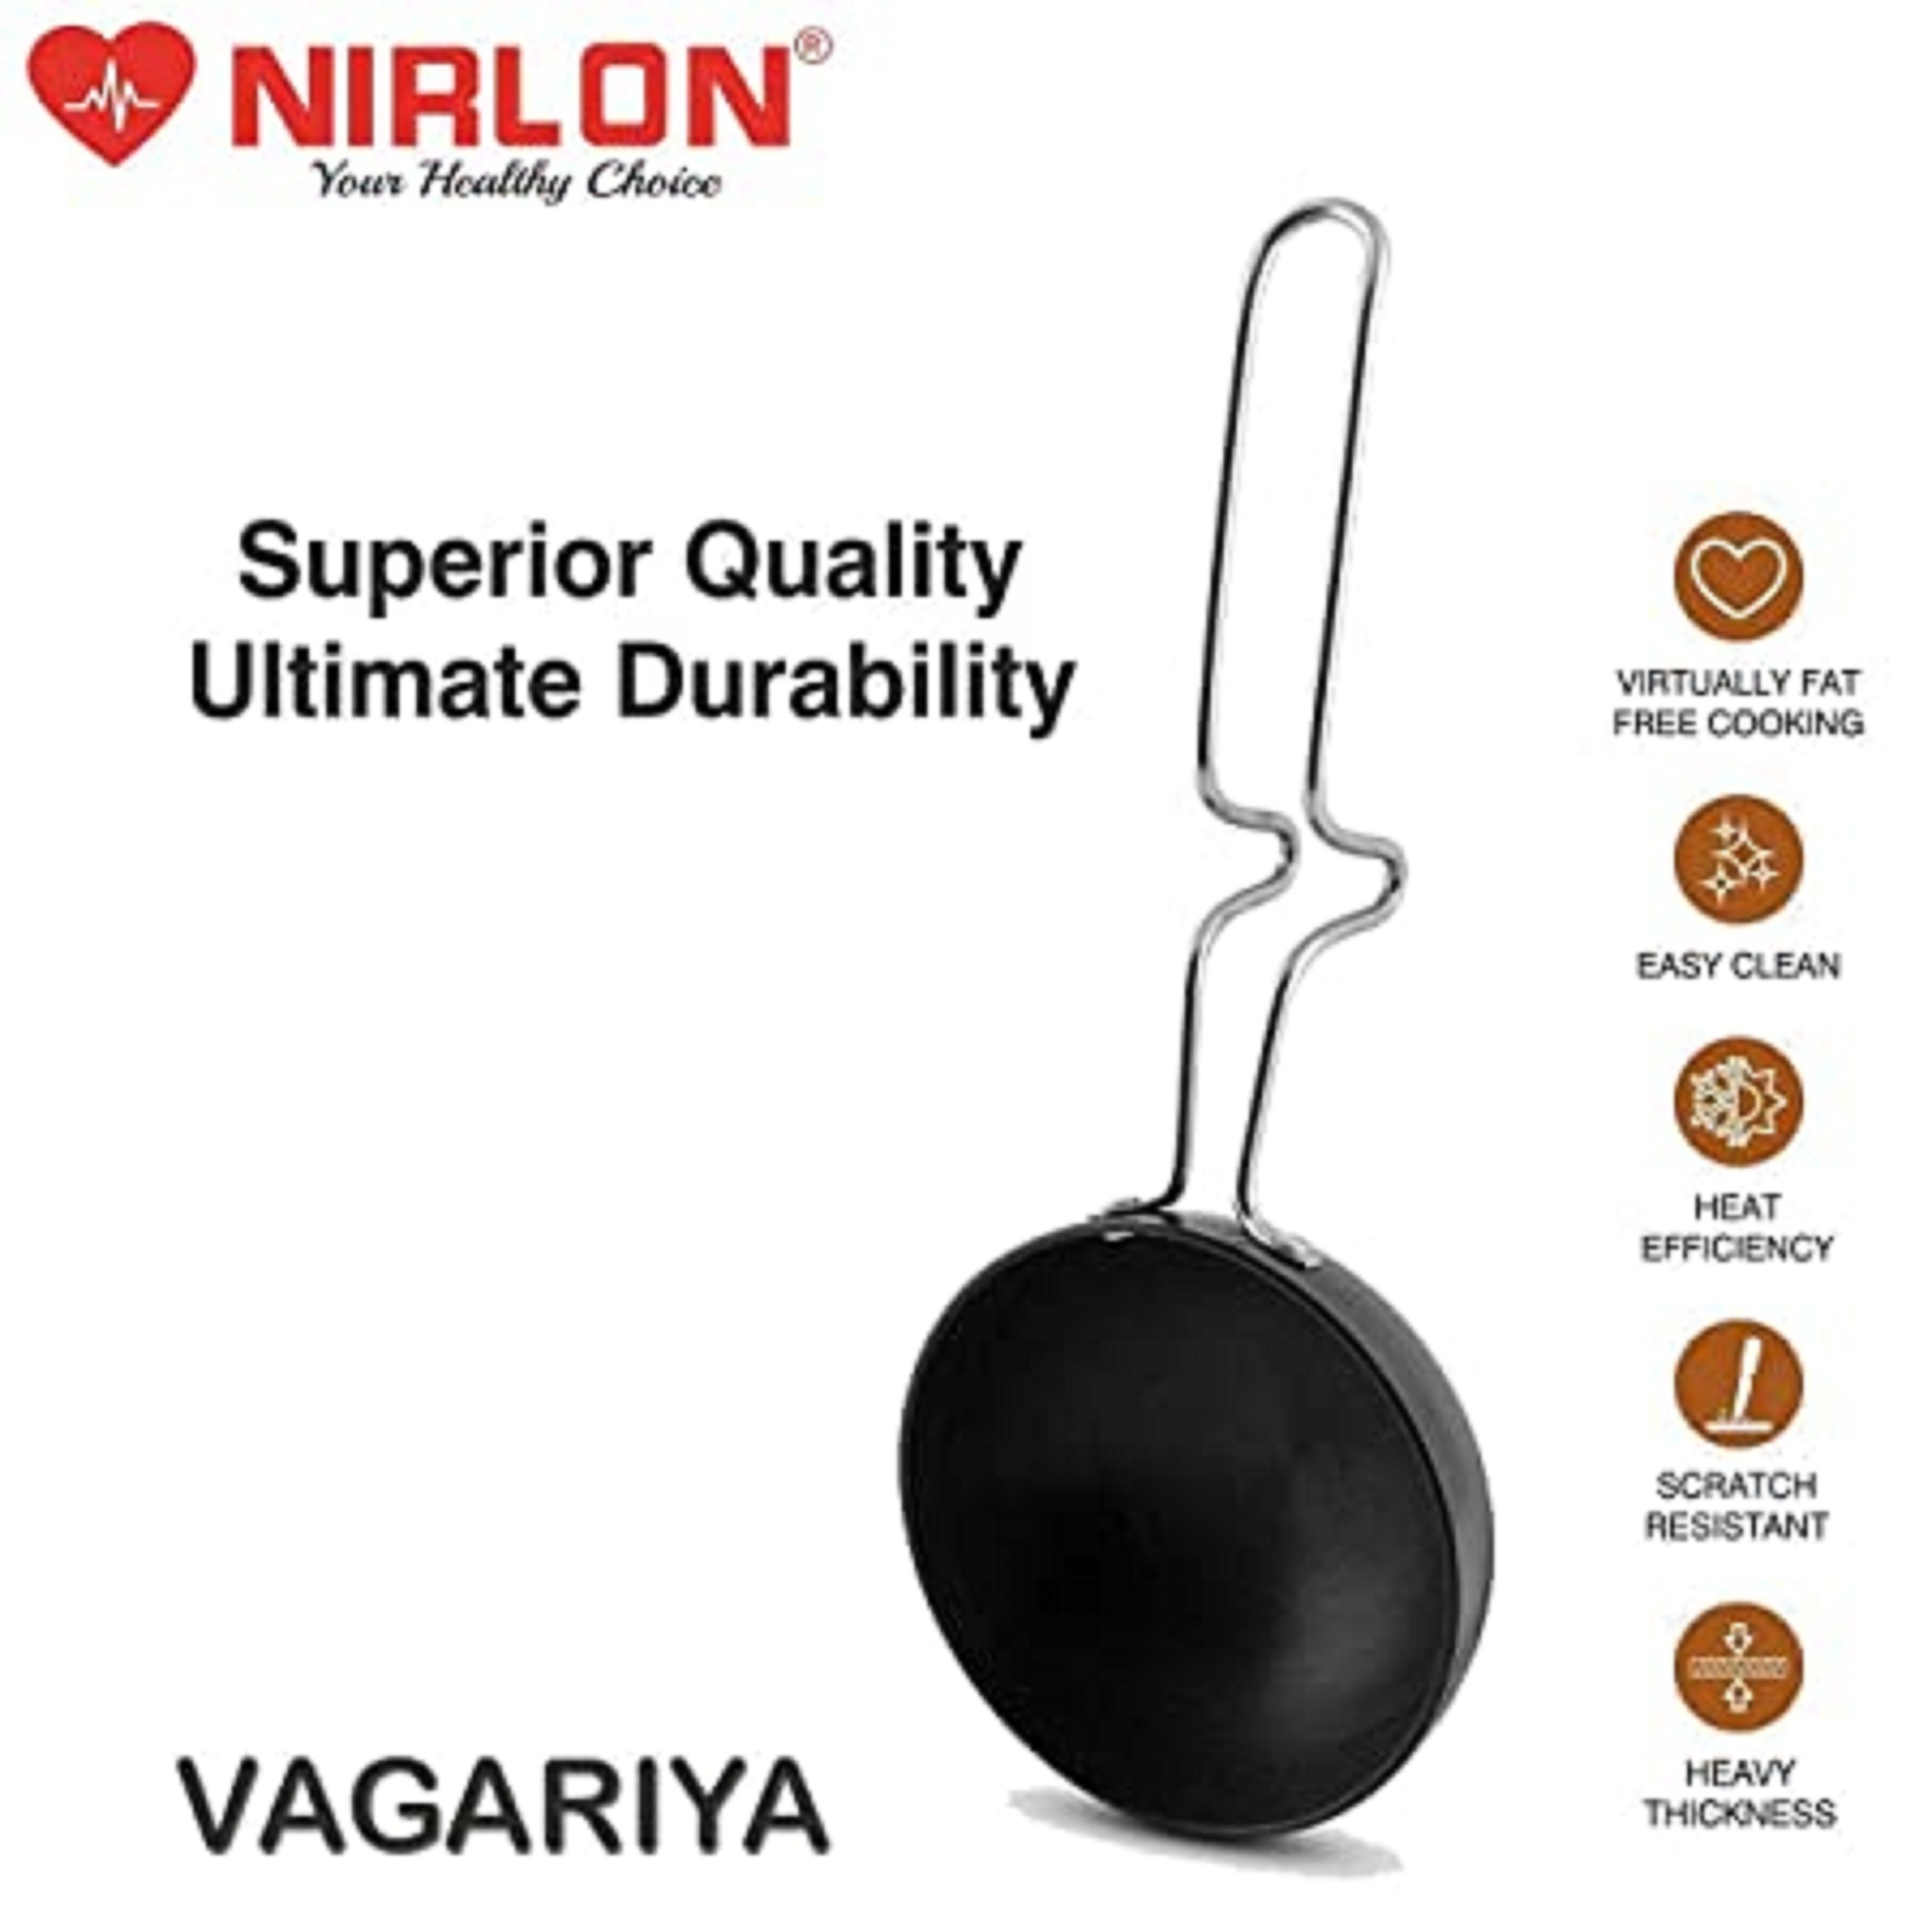 NIRLON Hard Anodised Tadka Pan / Vagariya with Handle/ Gas Stove Top Compatible